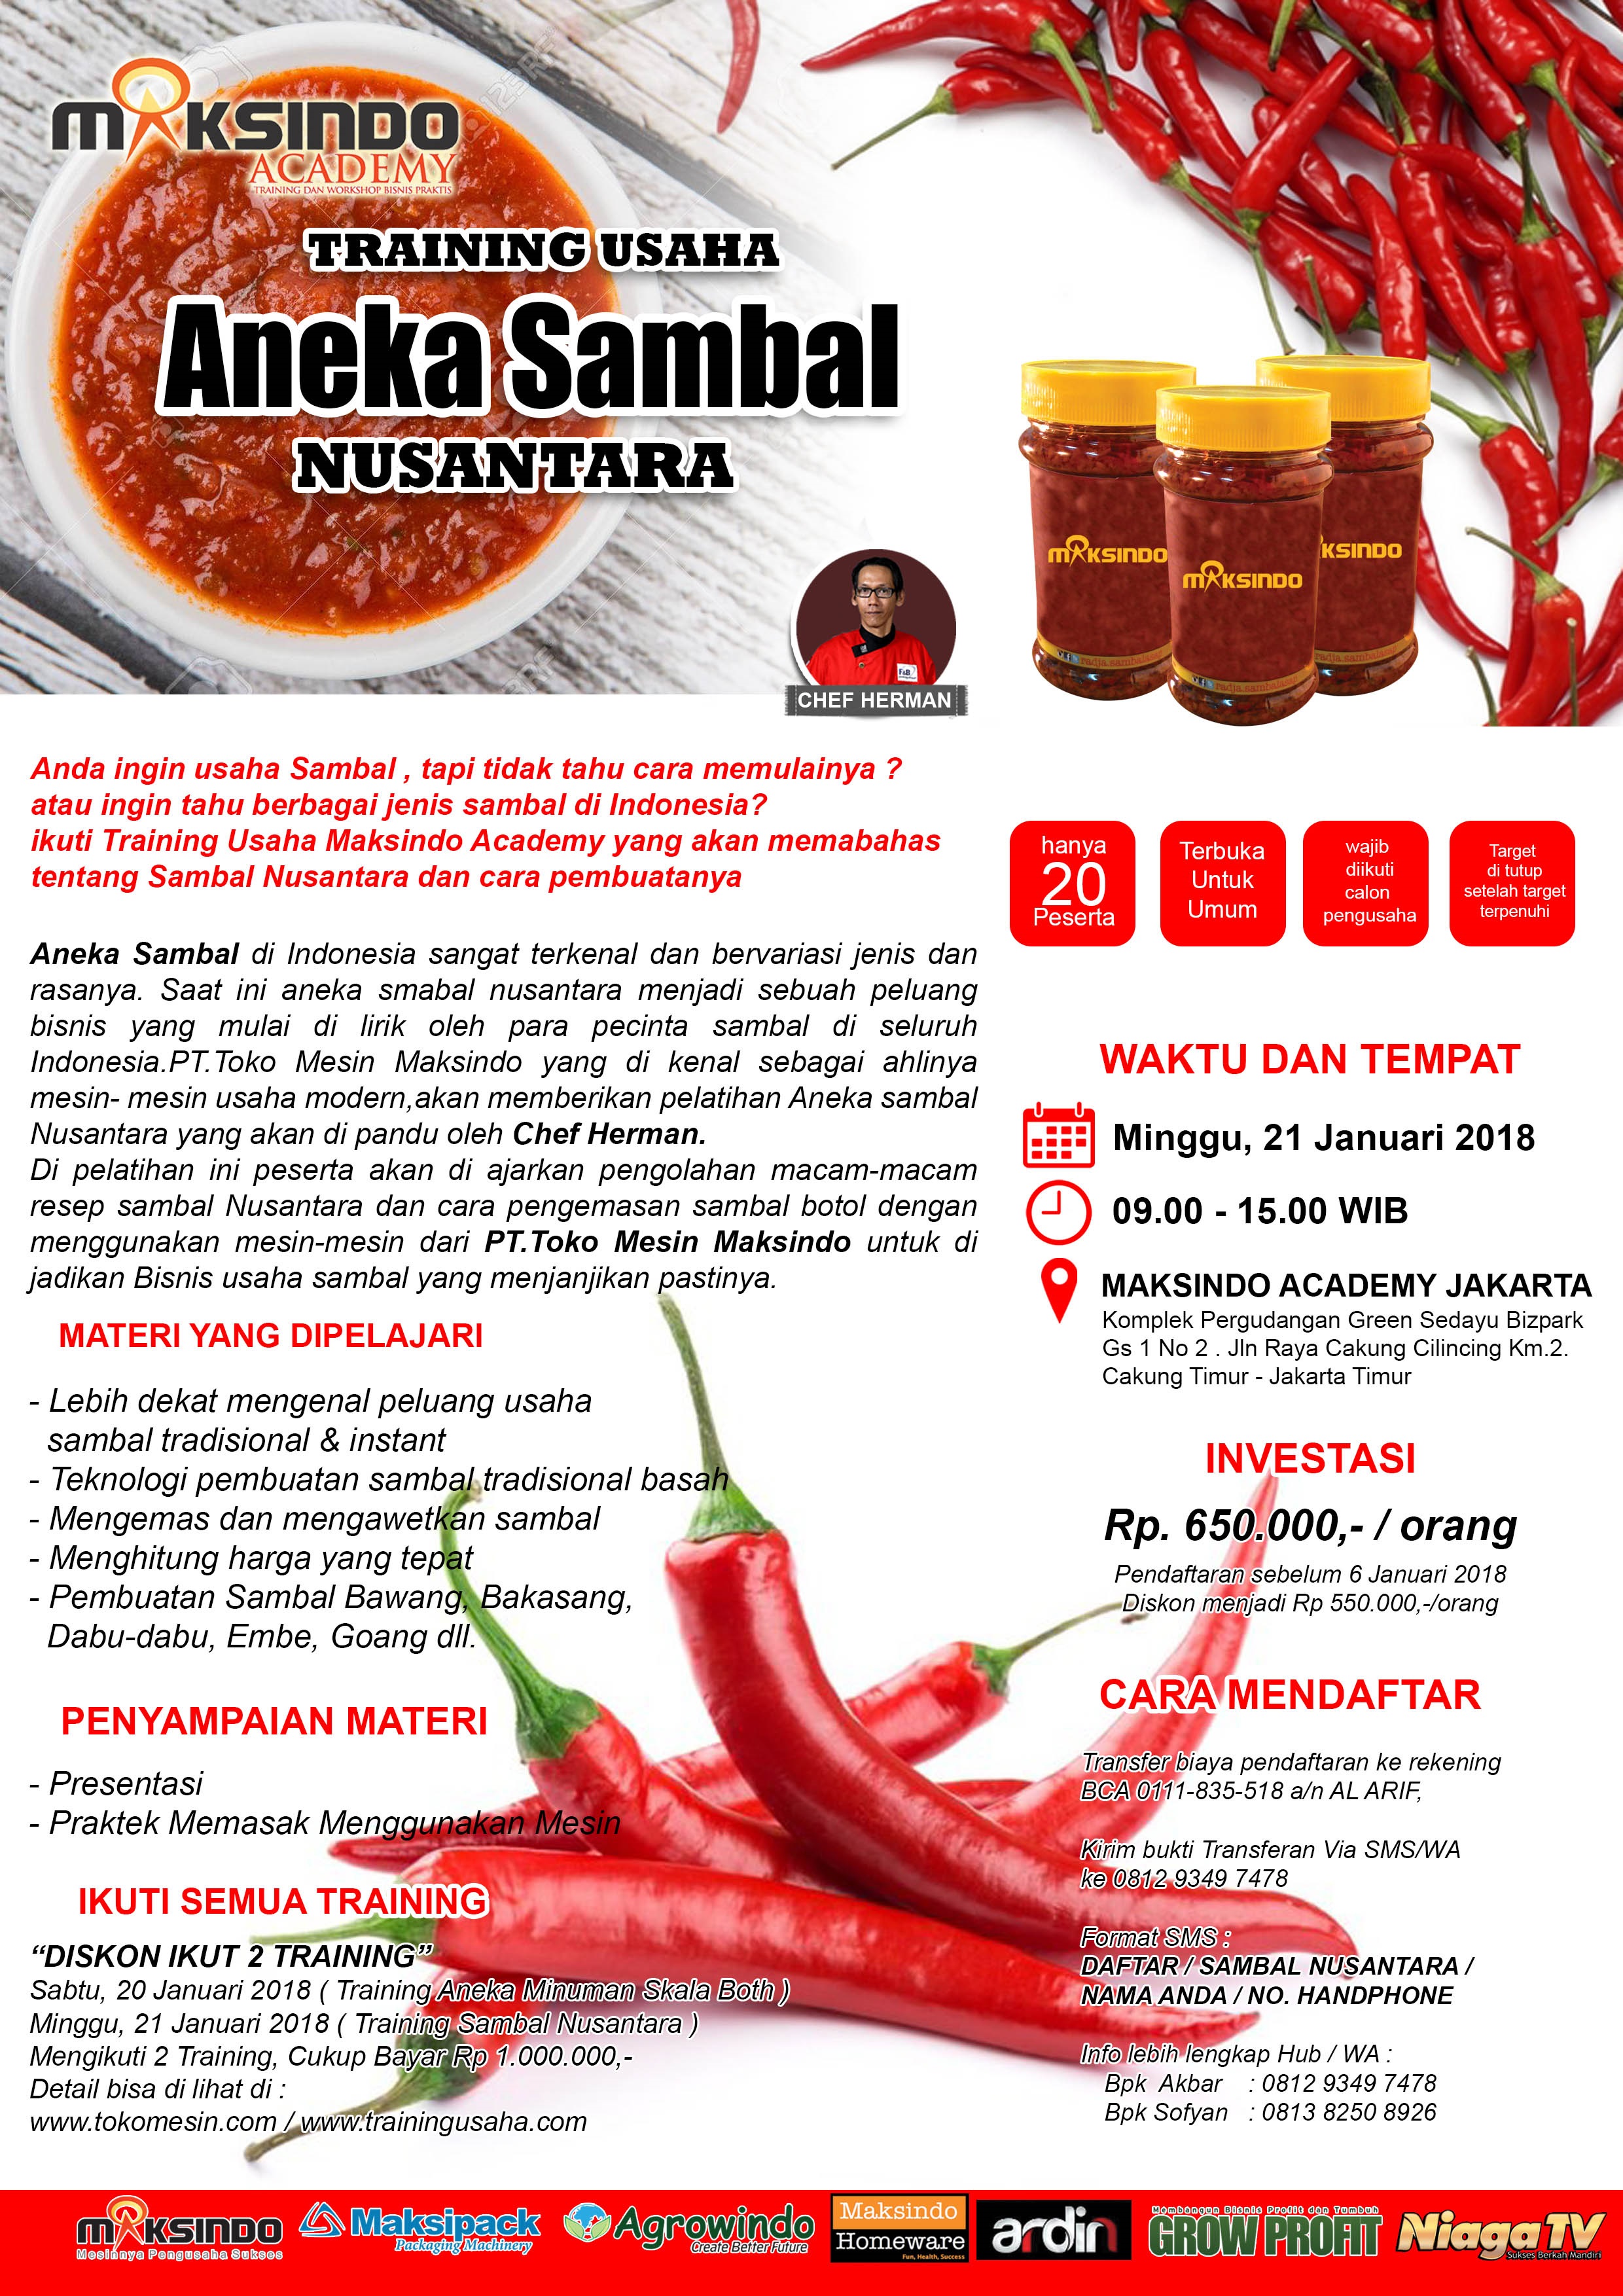 Training Usaha Aneka Sambal Nusantara, 21 Januari 2018